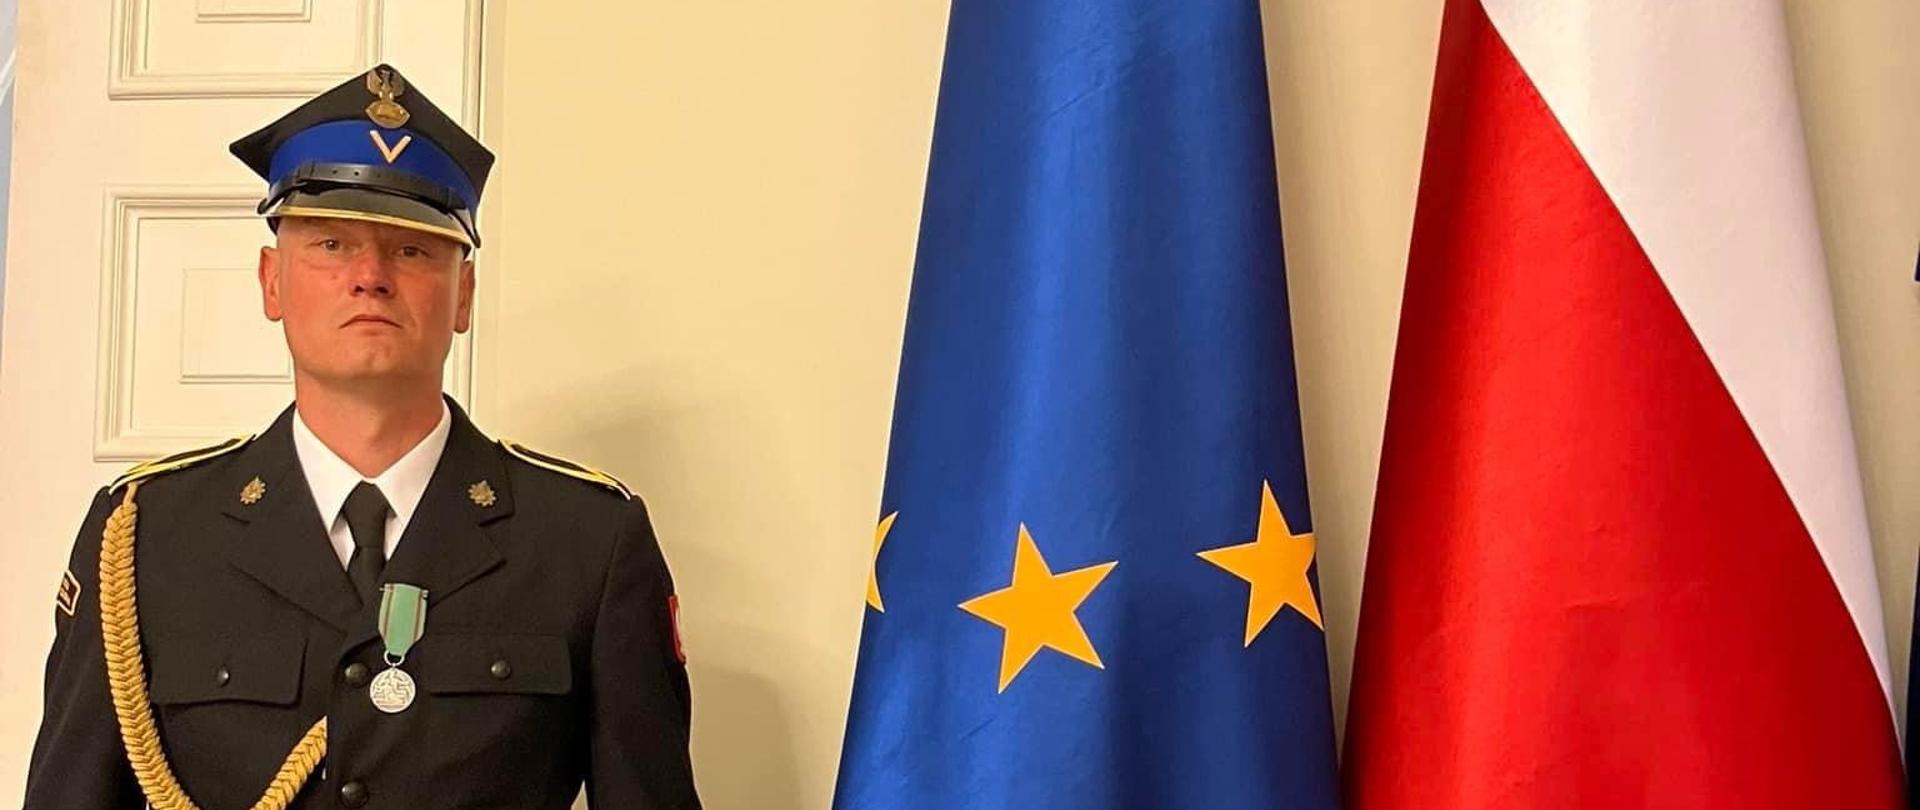 Z lewej ogn. Jacek Sandomierz w granatowym ubraniu specjalnym, z prawej flaga Polski i Unii Europejskiej. Zdjęcie zrobione w korytarzu Pałacu Prezydenckiego, w tle żółta ściana.